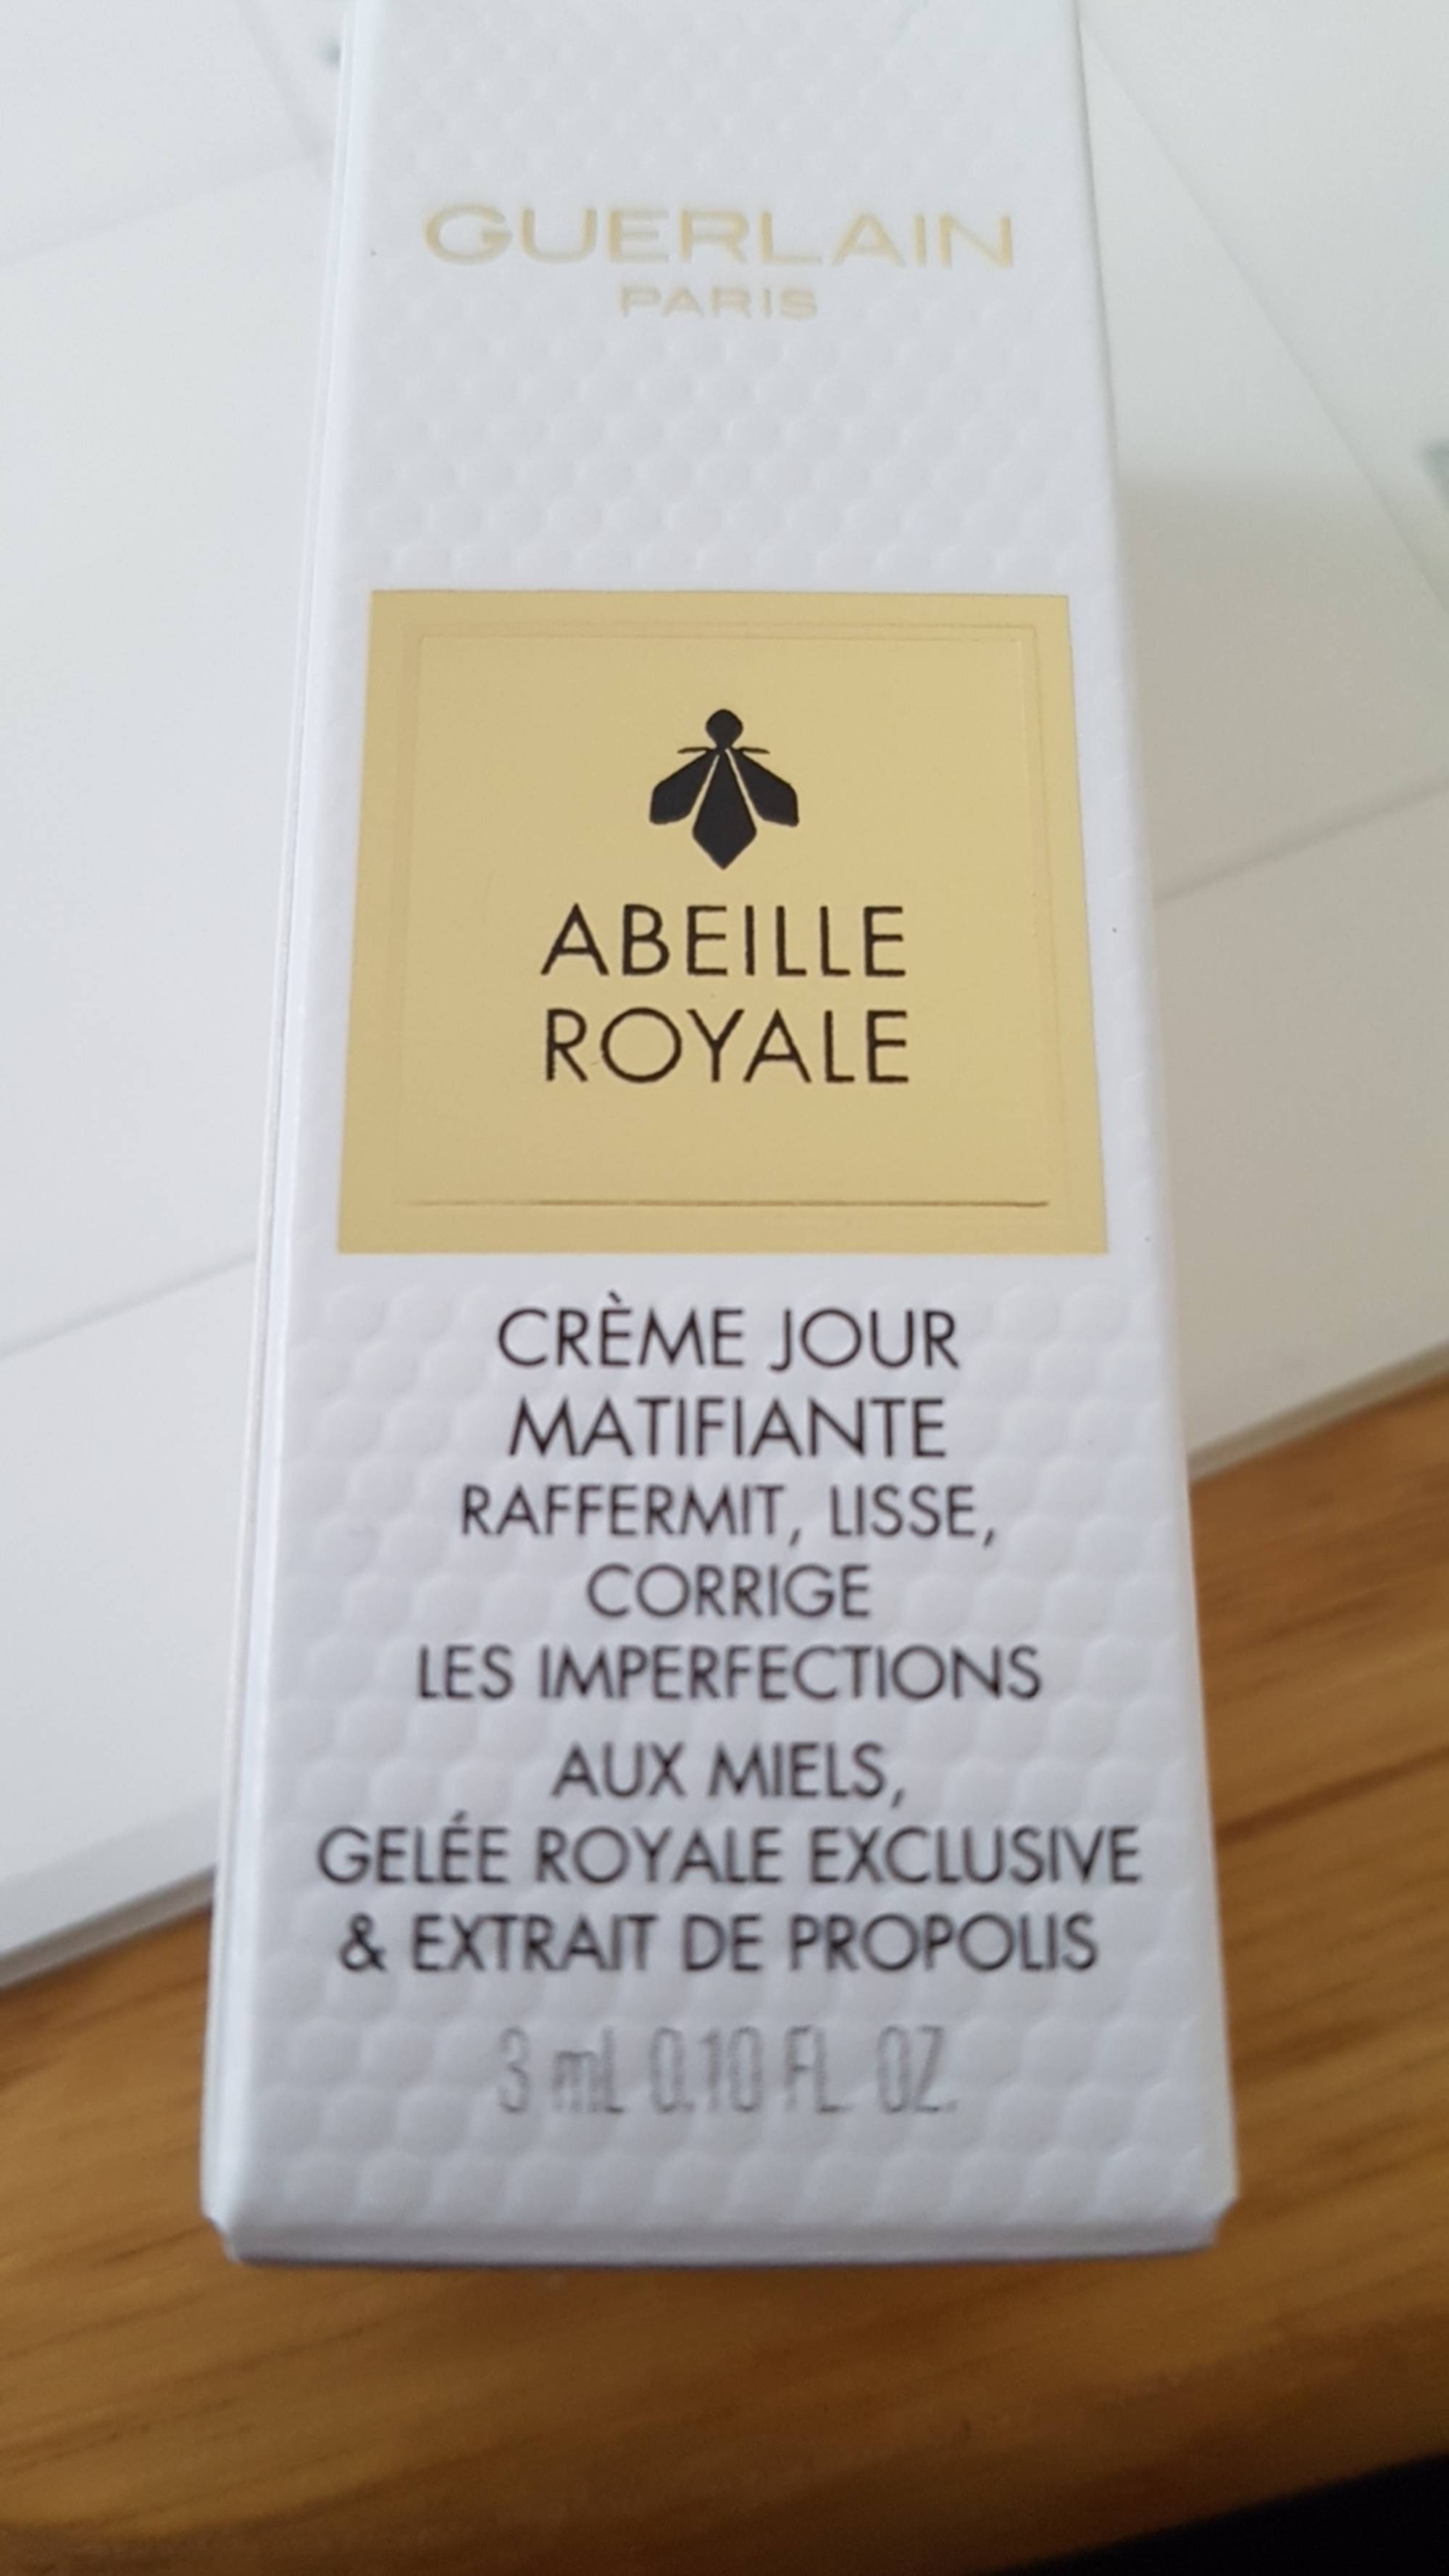 GUERLAIN - Abeille royale - Crème jour matifiante